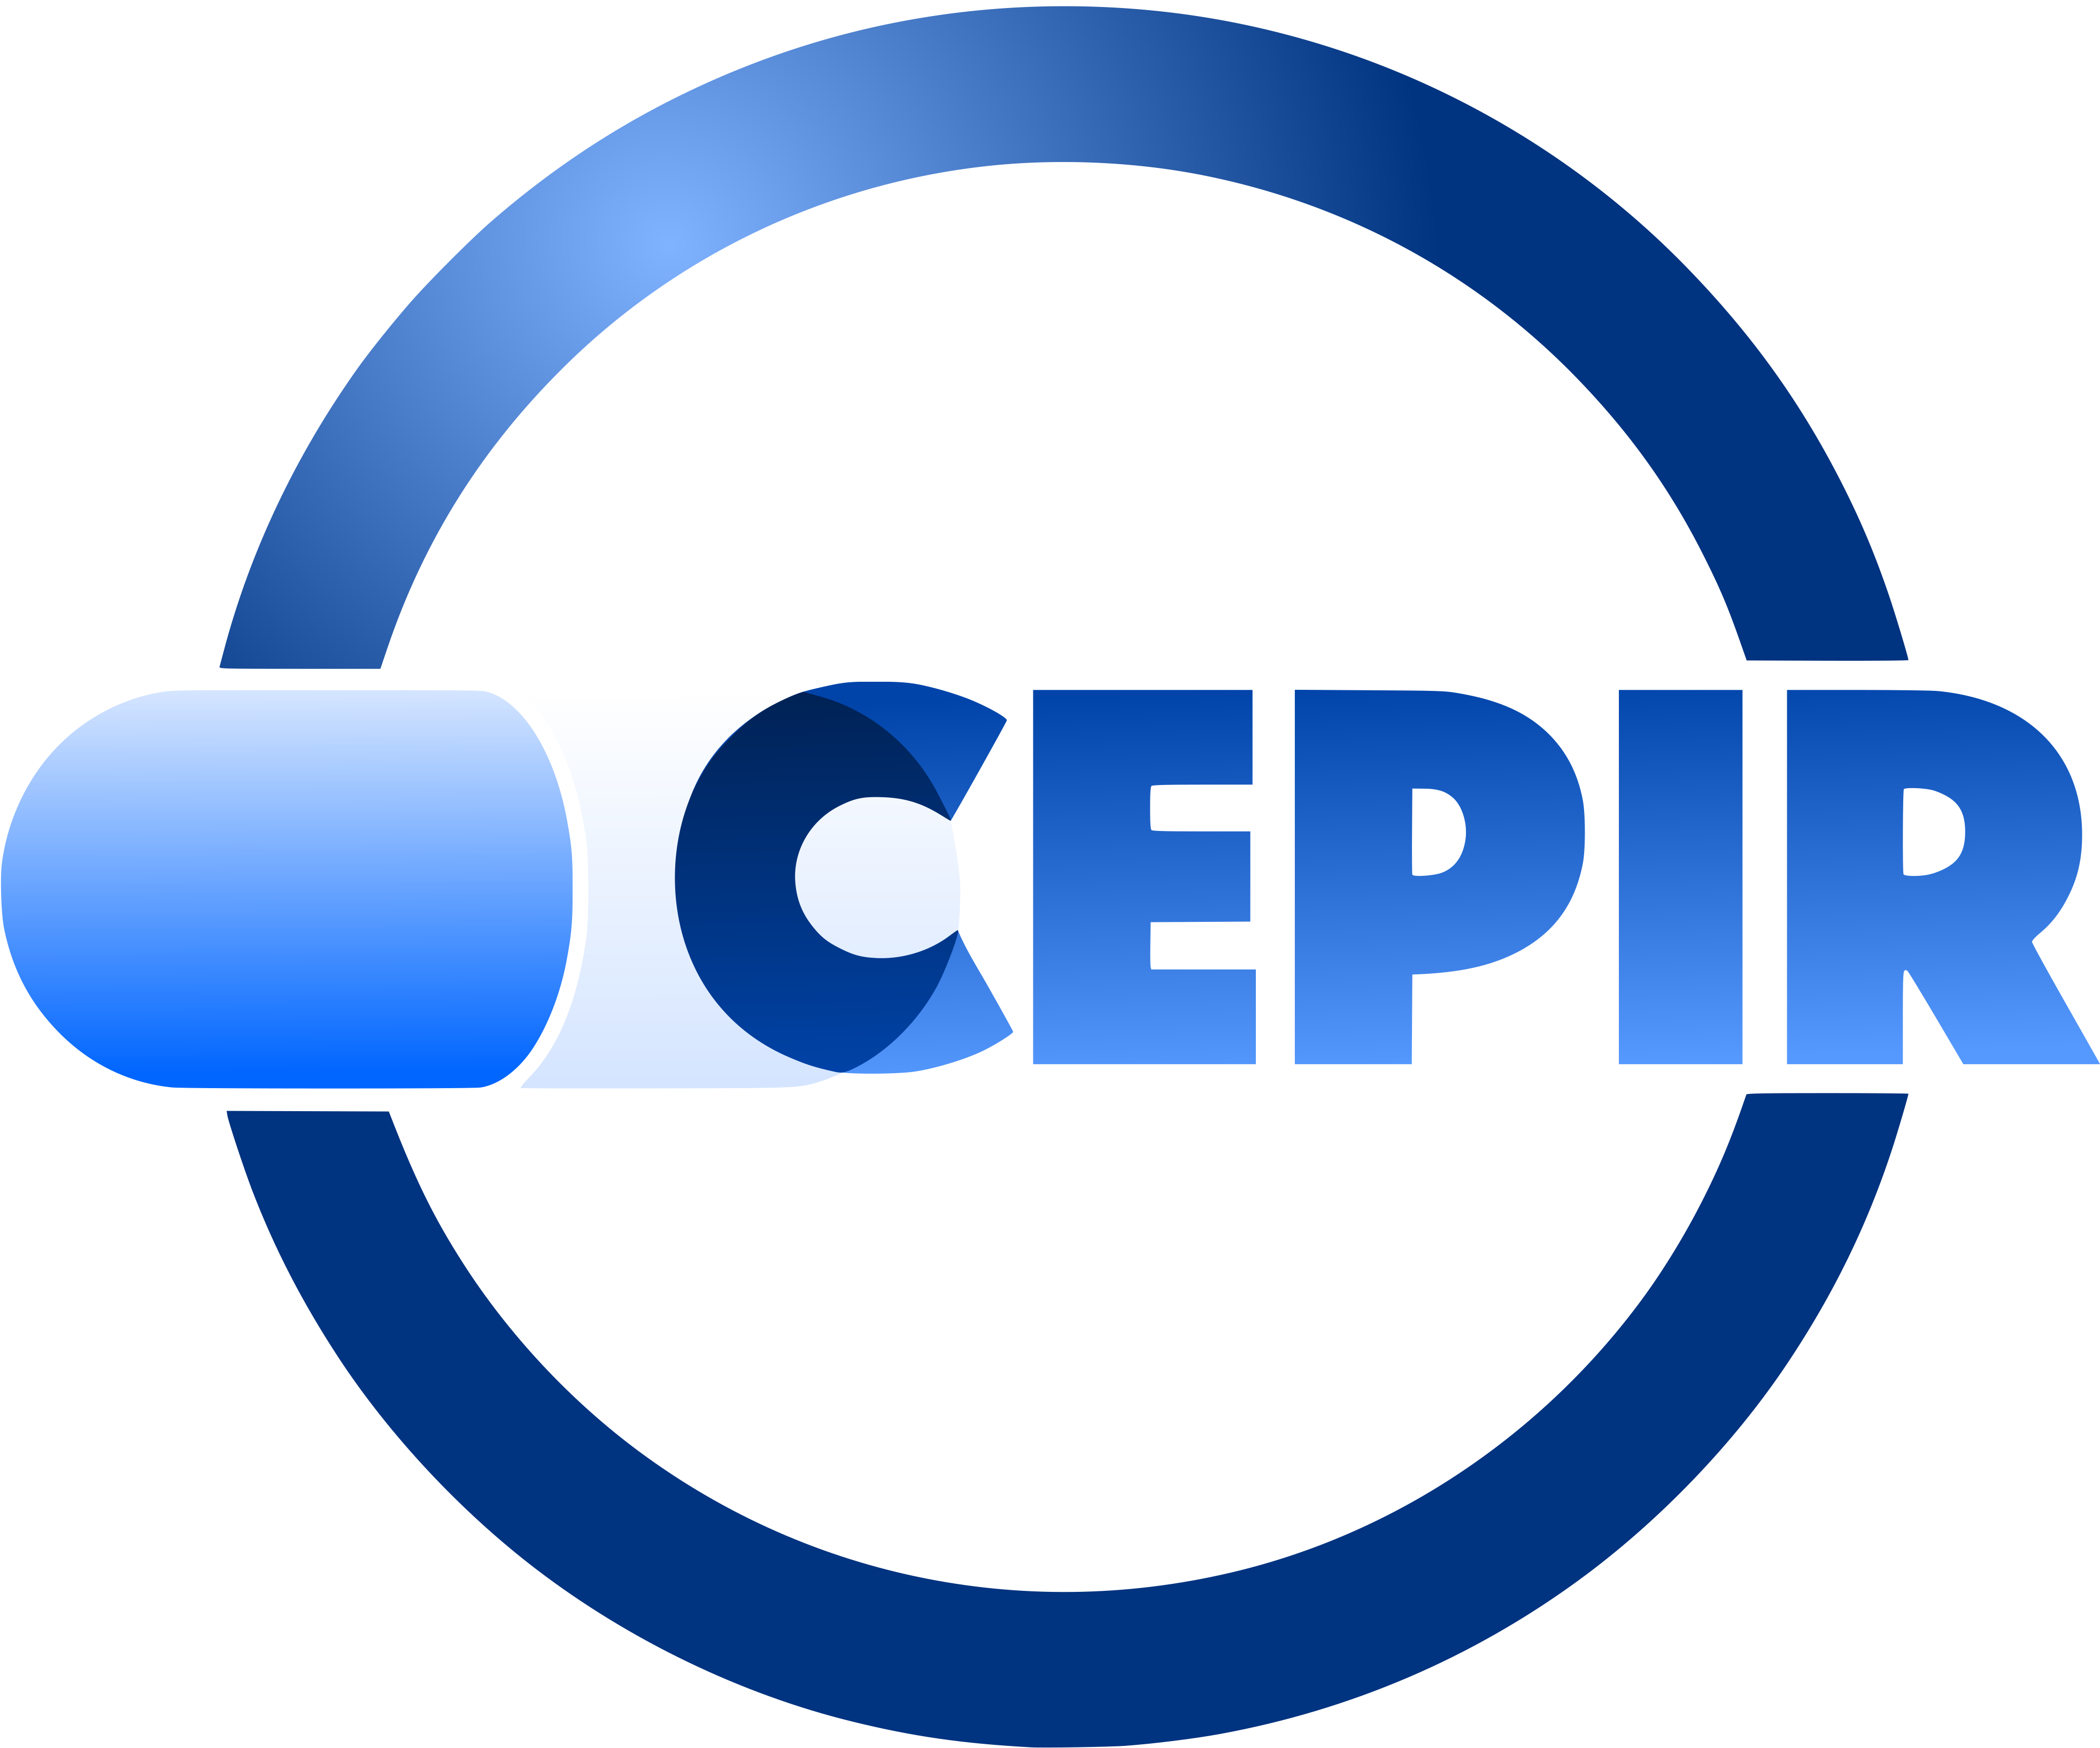 CEPIR – Cercle des Etudiants en Pharmacie Industrielle de Rouen